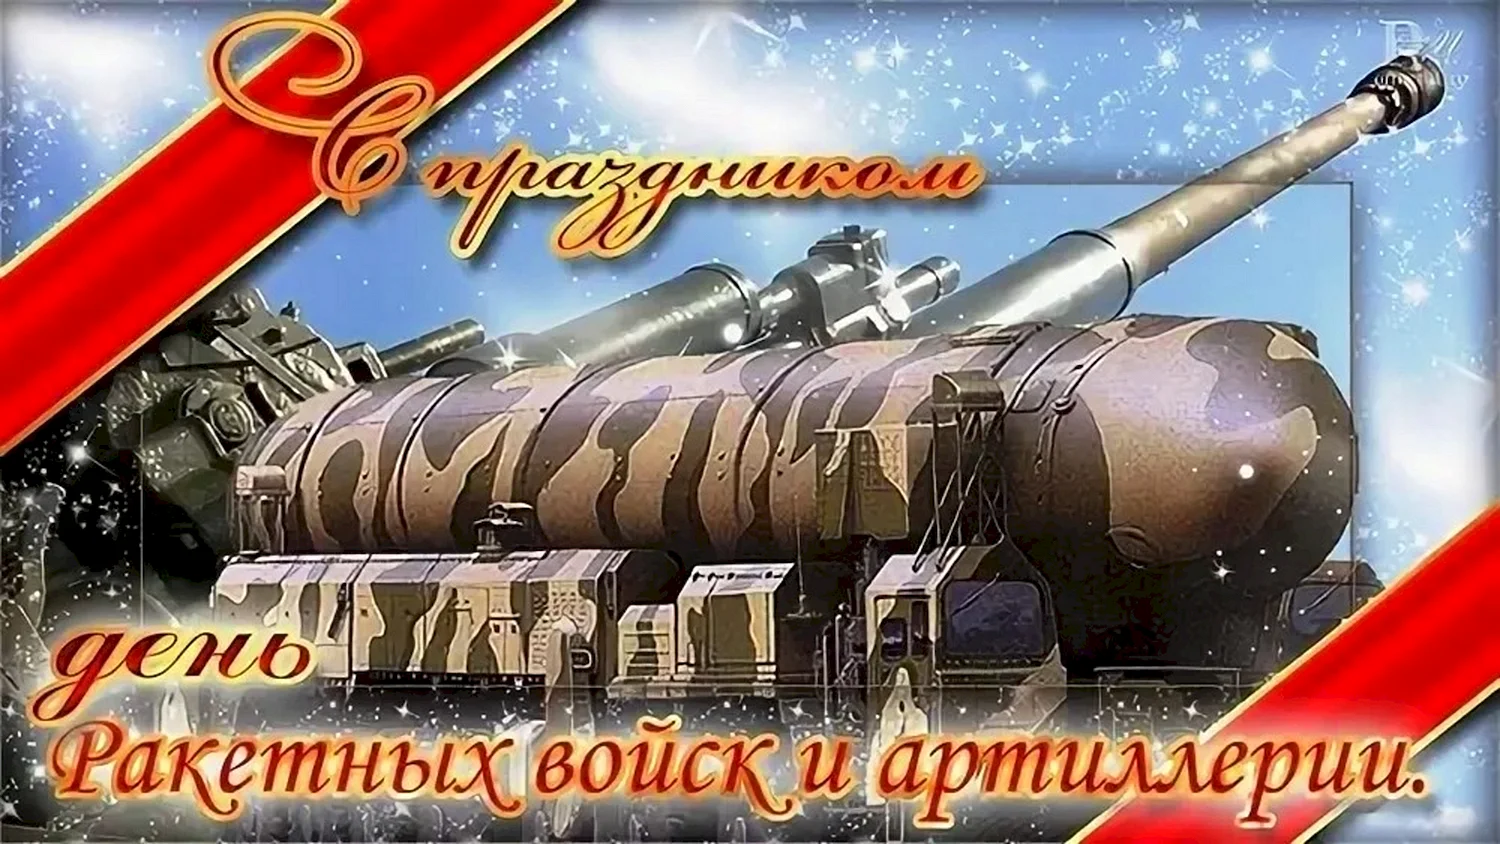 День ракетных войск и артиллерии